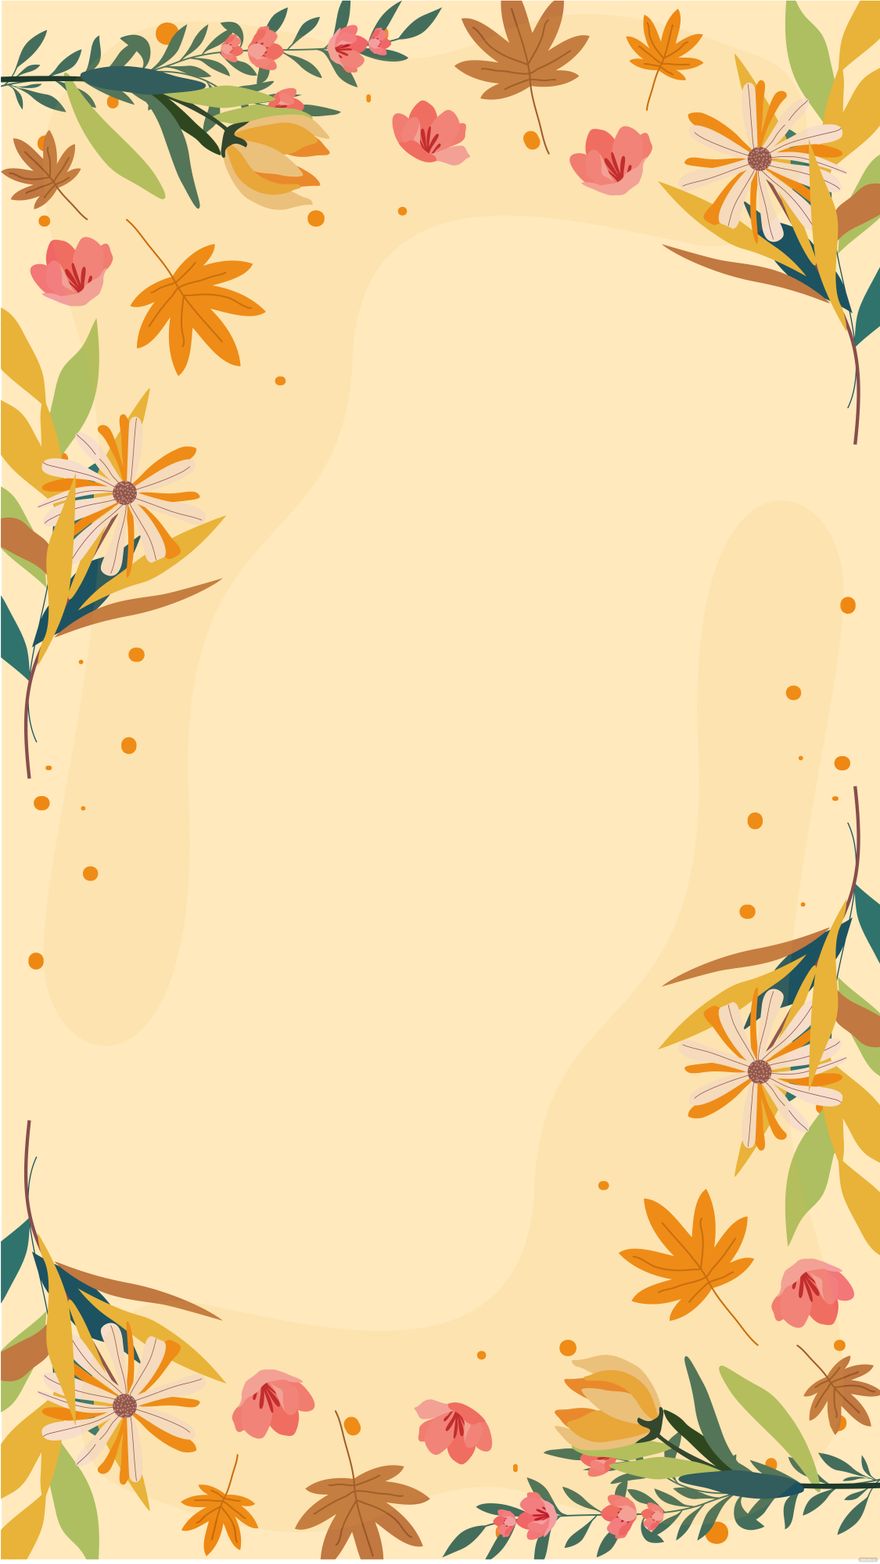 Fall Floral Arrangements Background in Illustrator, EPS, SVG, JPG